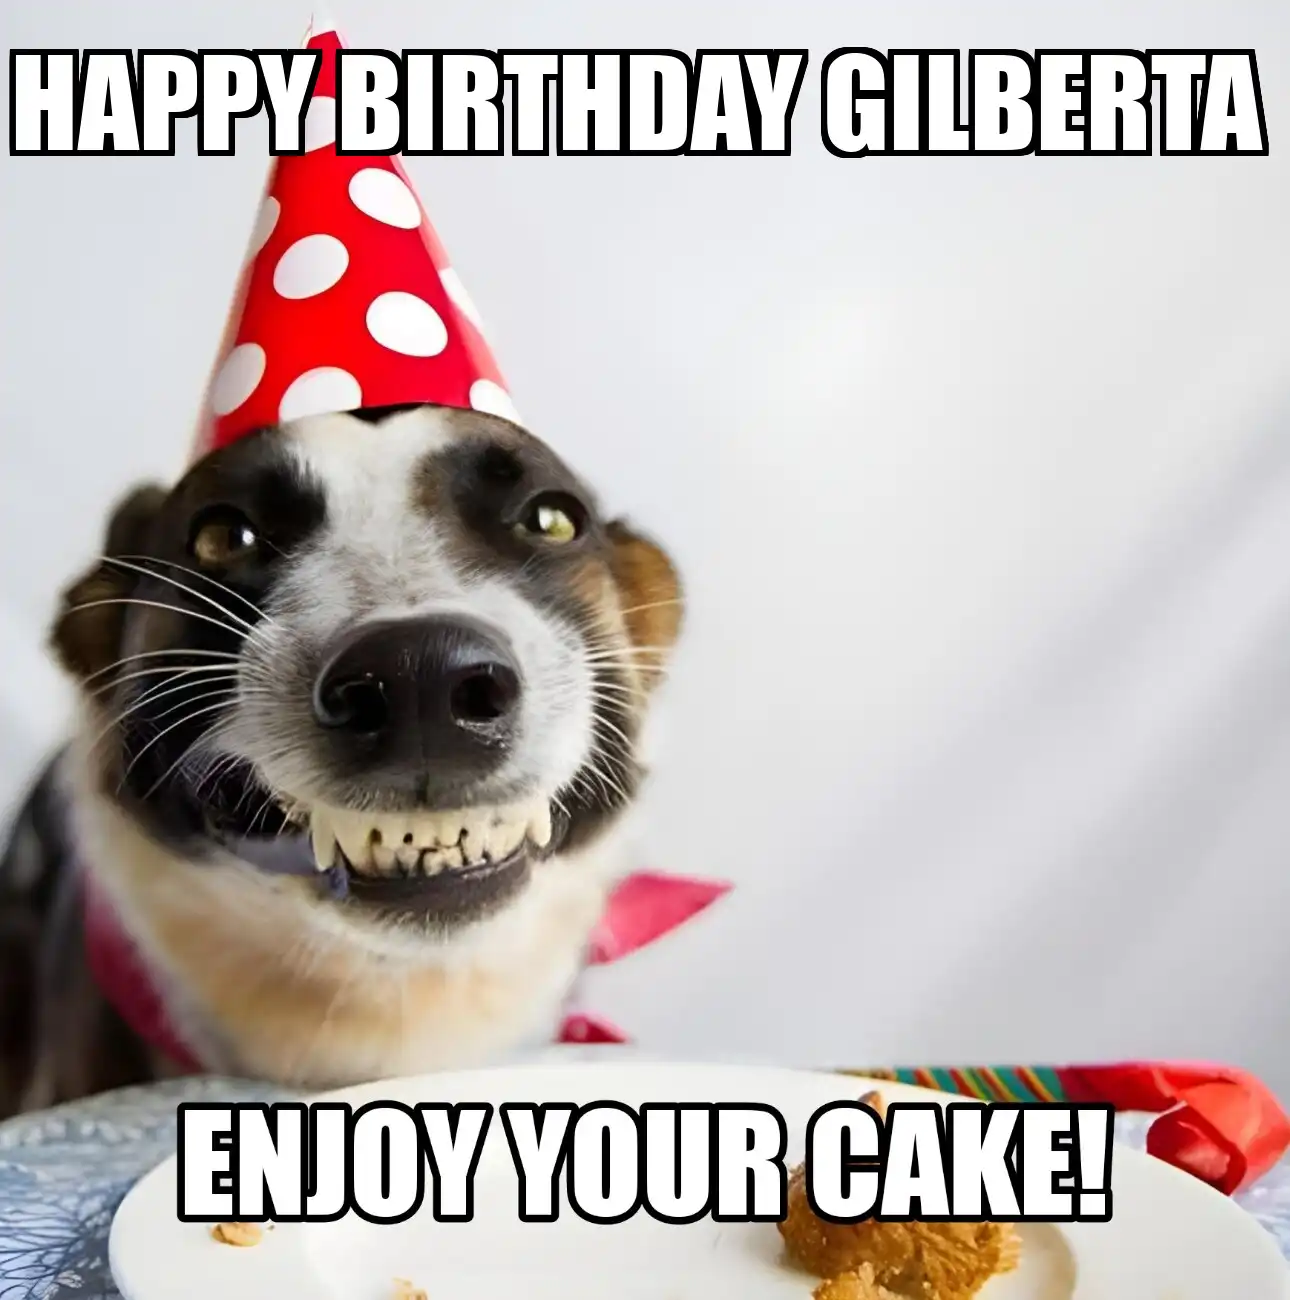 Happy Birthday Gilberta Enjoy Your Cake Dog Meme